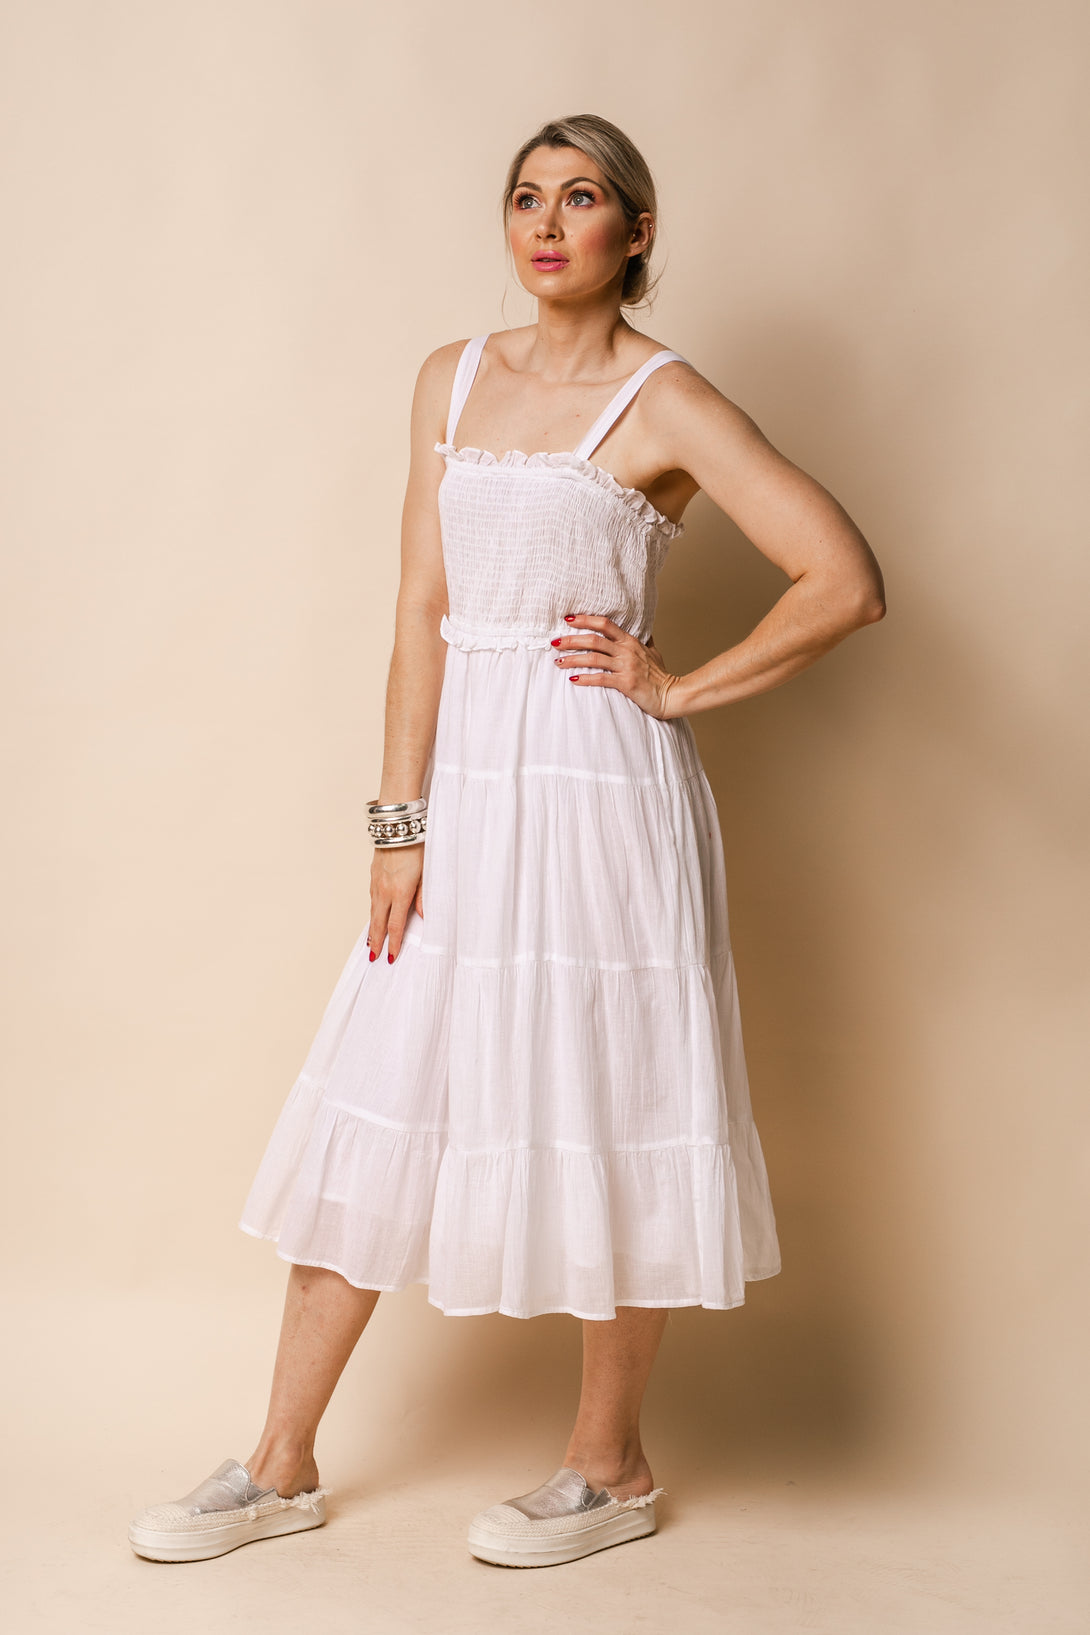 Pia Cotton Dress in White - Imagine Fashion